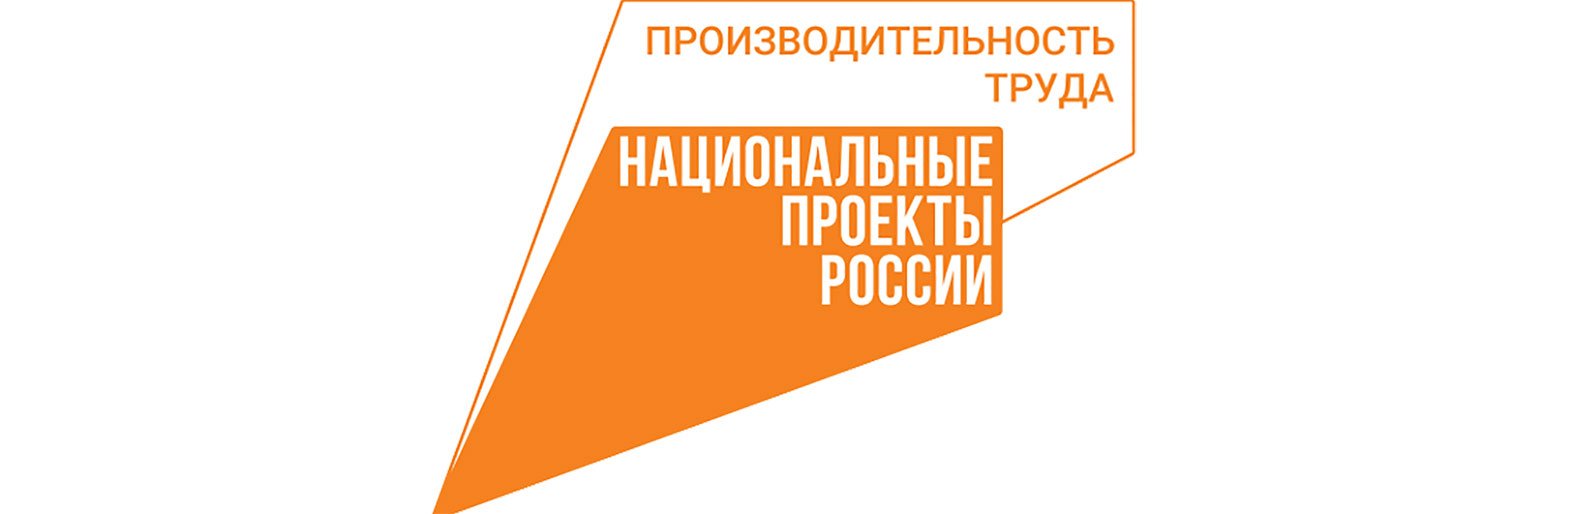 Нацпроект «Производительность труда» помогает повысить эффективность работы исполнительной власти Белгородской области